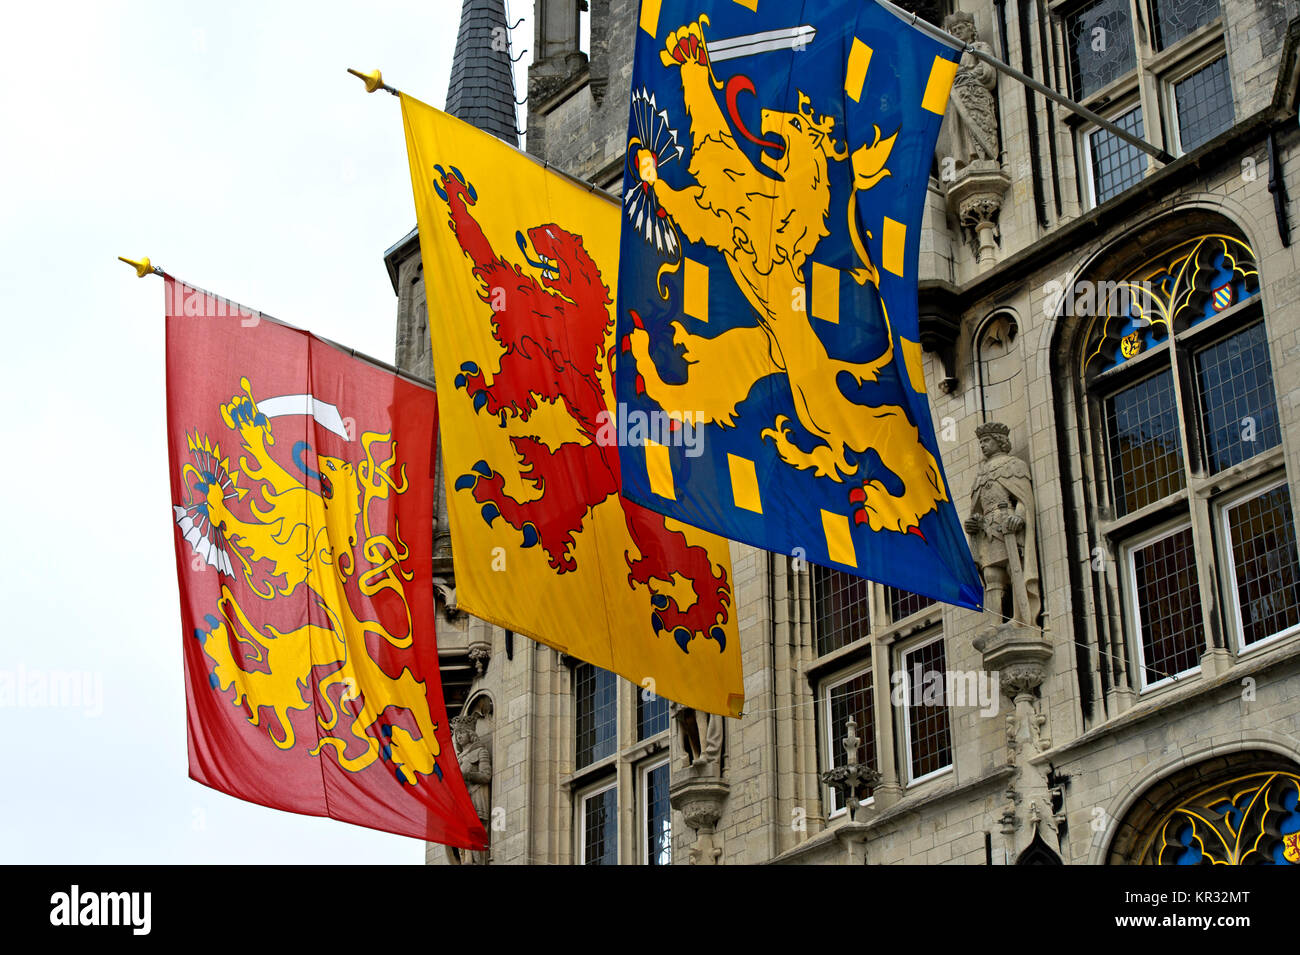 Las banderas con las banderas de la República holandesa, el condado de Holanda y el Reino de los Países Bajos en el ayuntamiento gótico, Gouda, Países Bajos Foto de stock